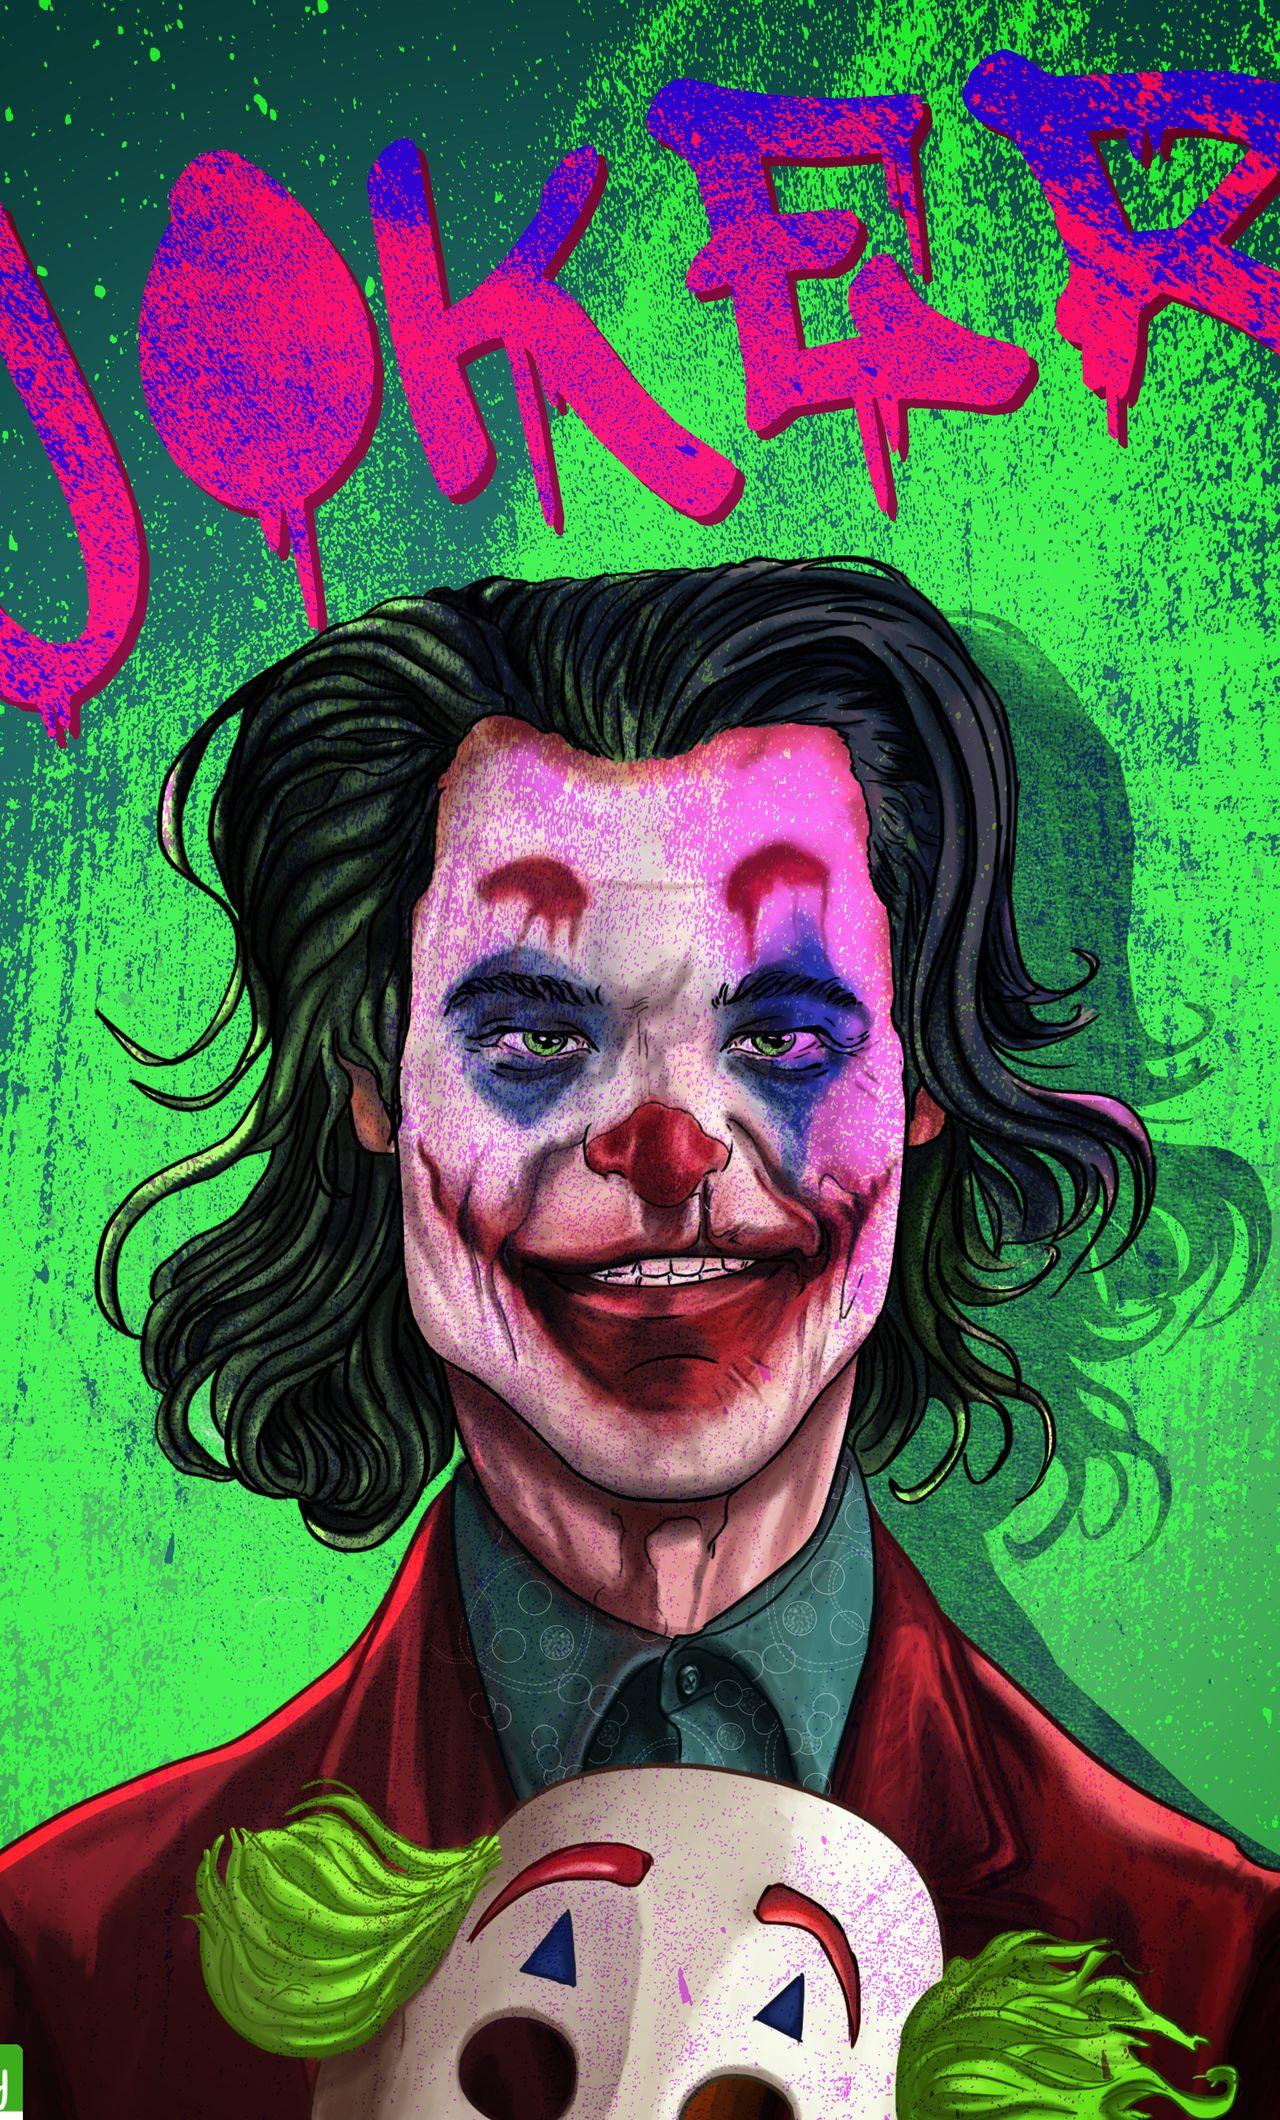 Joker 2019 Joaquin Phoenix Wallpapers - Top Free Joker 2019 Joaquin ...